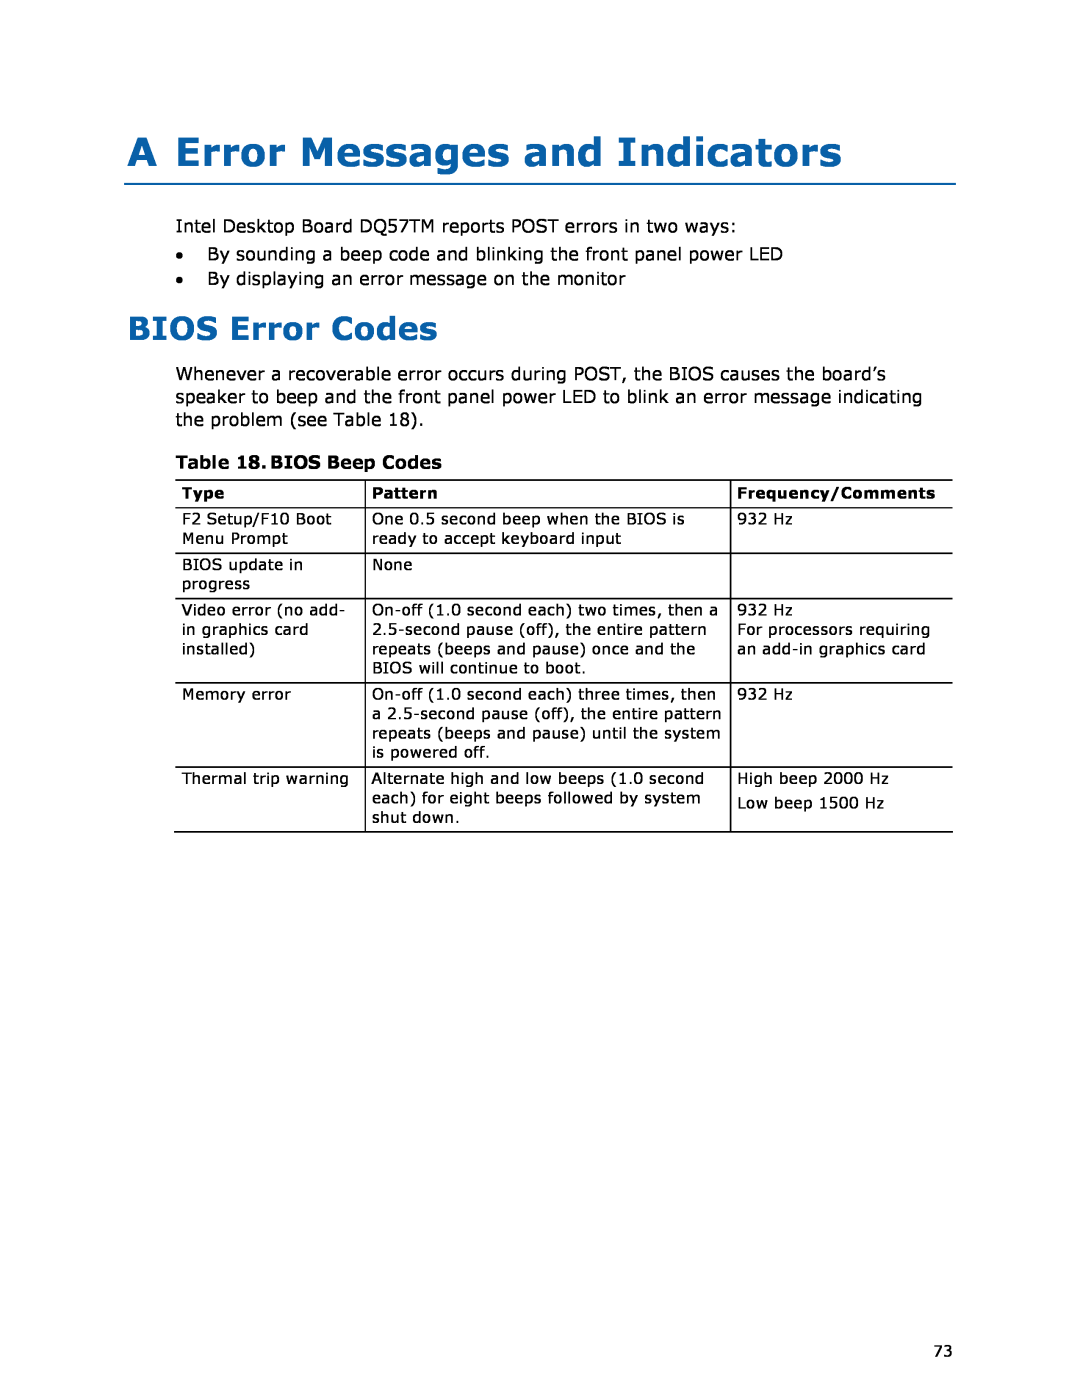 Intel DQ57TM manual A Error Messages and Indicators, BIOS Error Codes, BIOS Beep Codes 